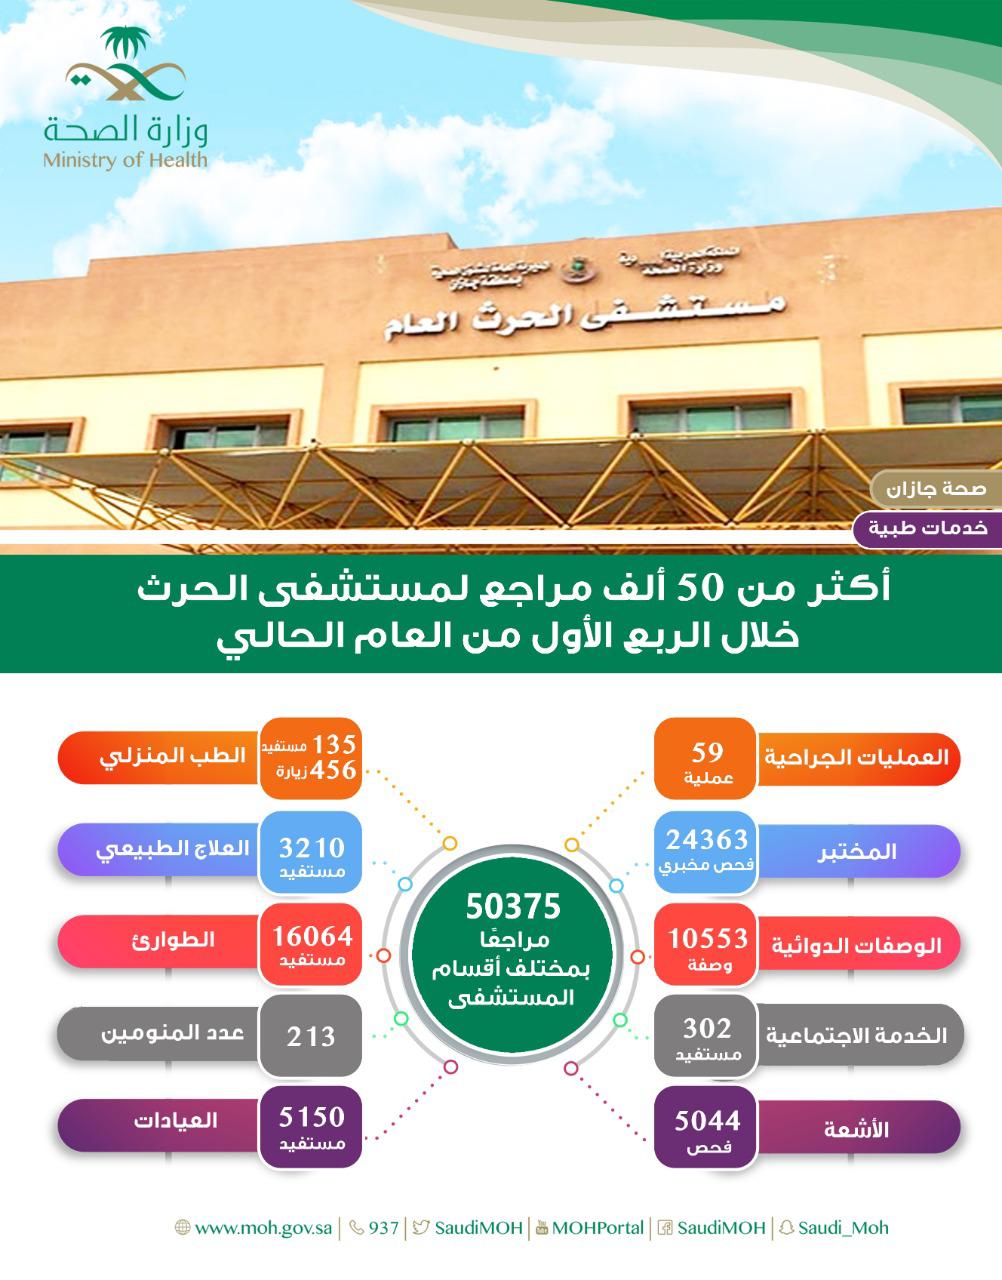 أكثر من 50 ألف مراجع لمستشفى الحرث خلال الربع الأول من العام الحالي